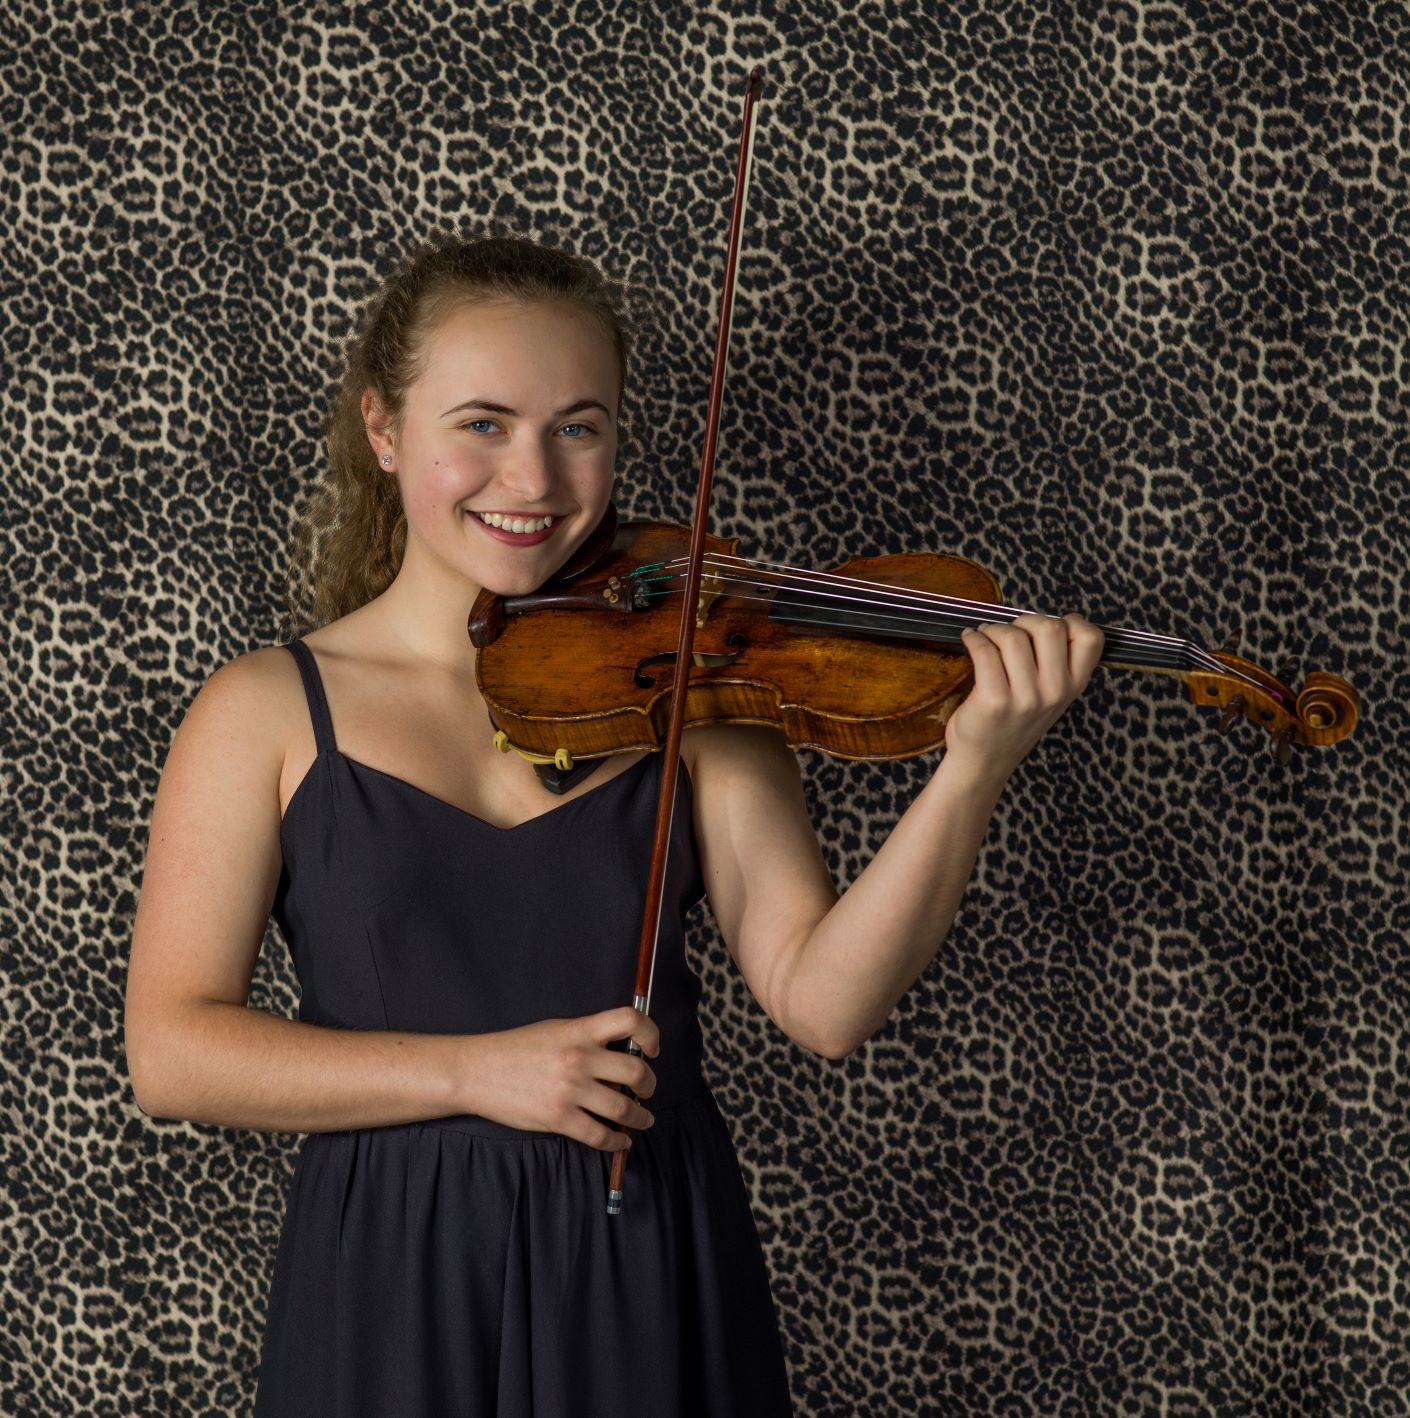 La temporada de Juventudes Musicales se inicia con un concierto de violín y piano 1